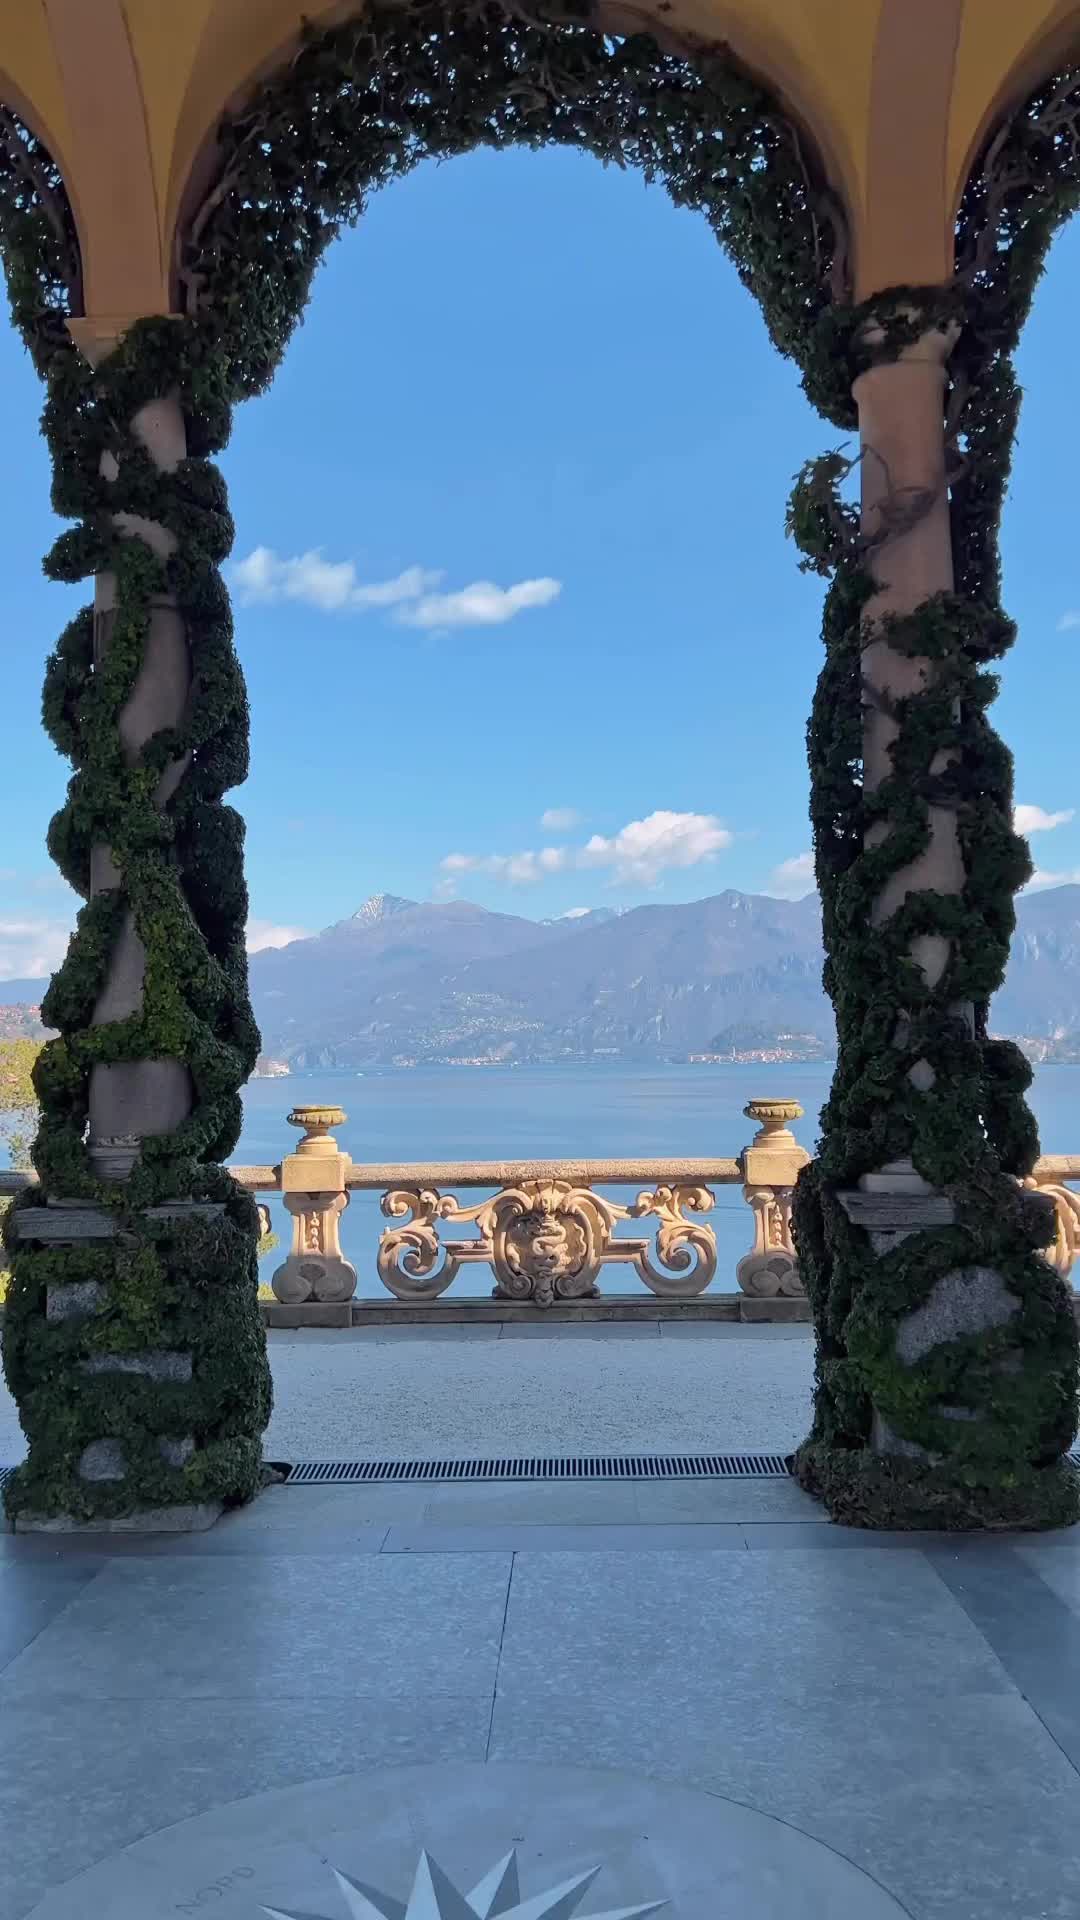 Discover Villa Balbianello on Lake Como, Italy